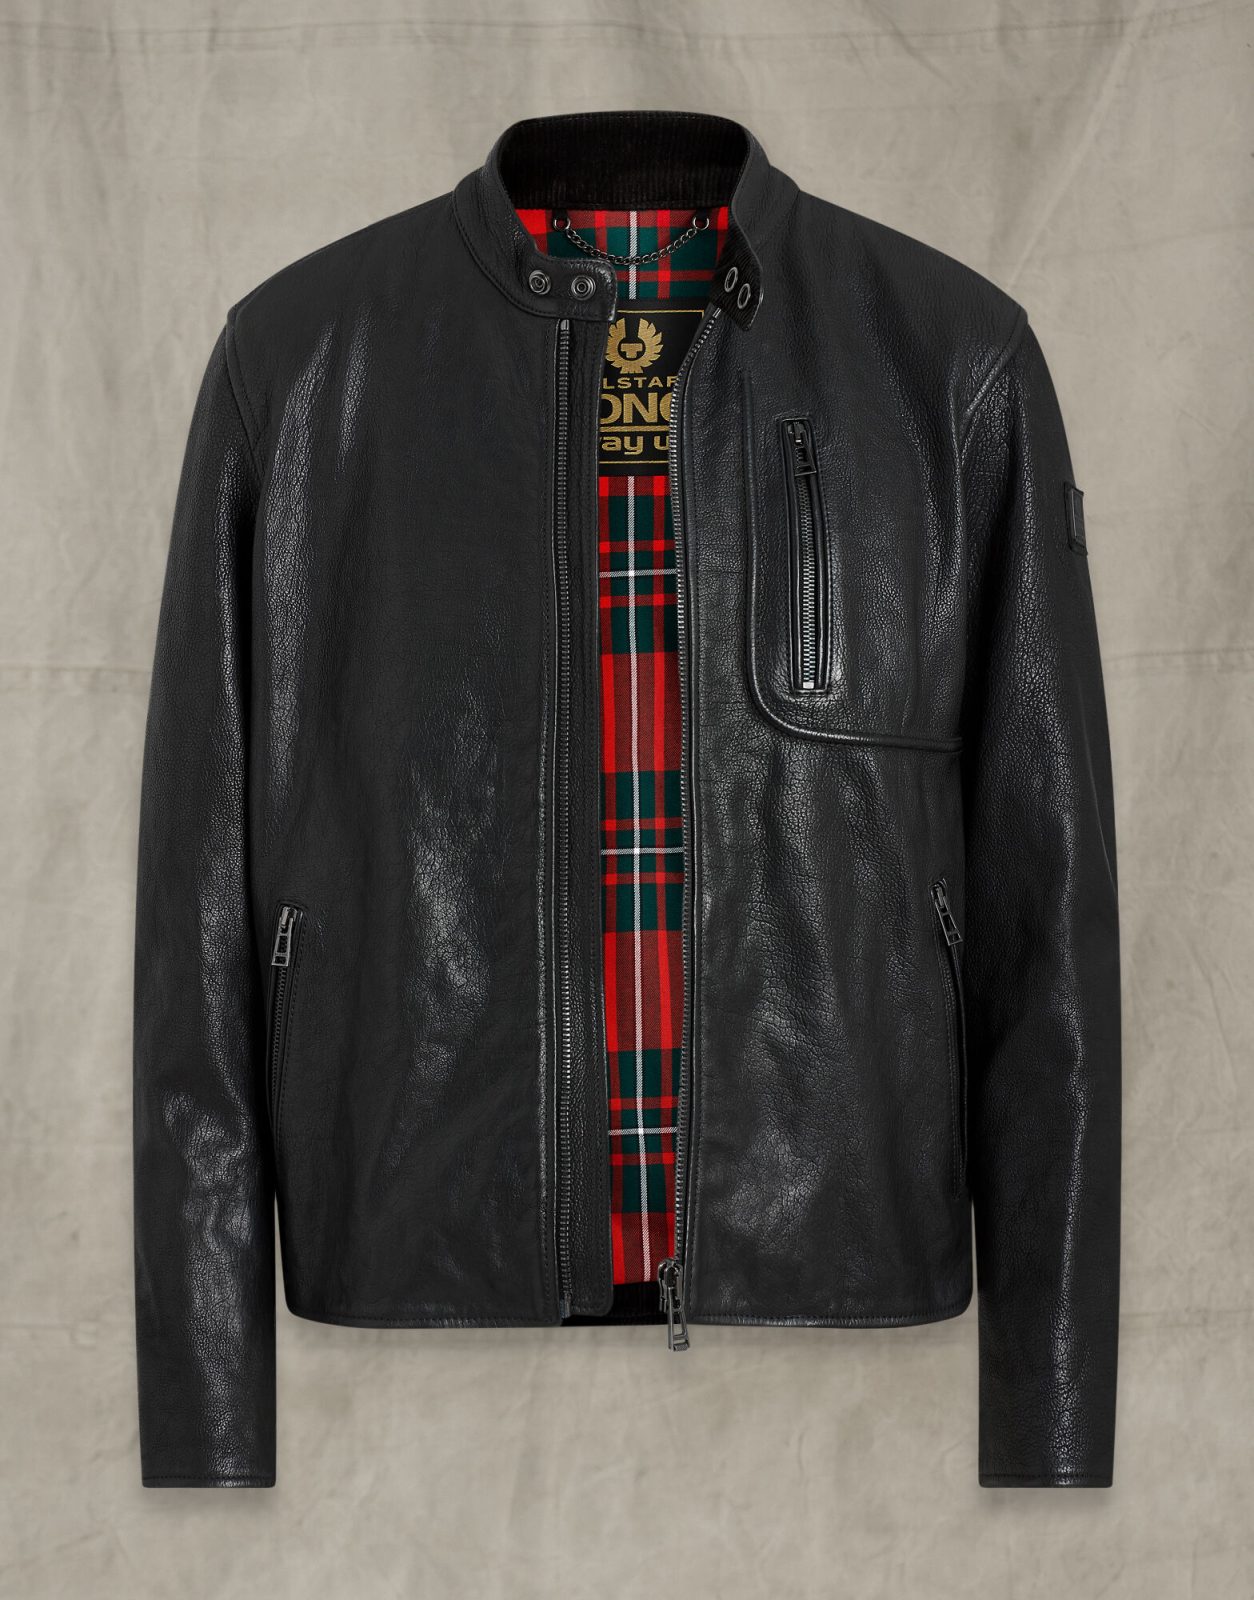 Long Way Up Montana Black Leather Jacket - A2 Jackets